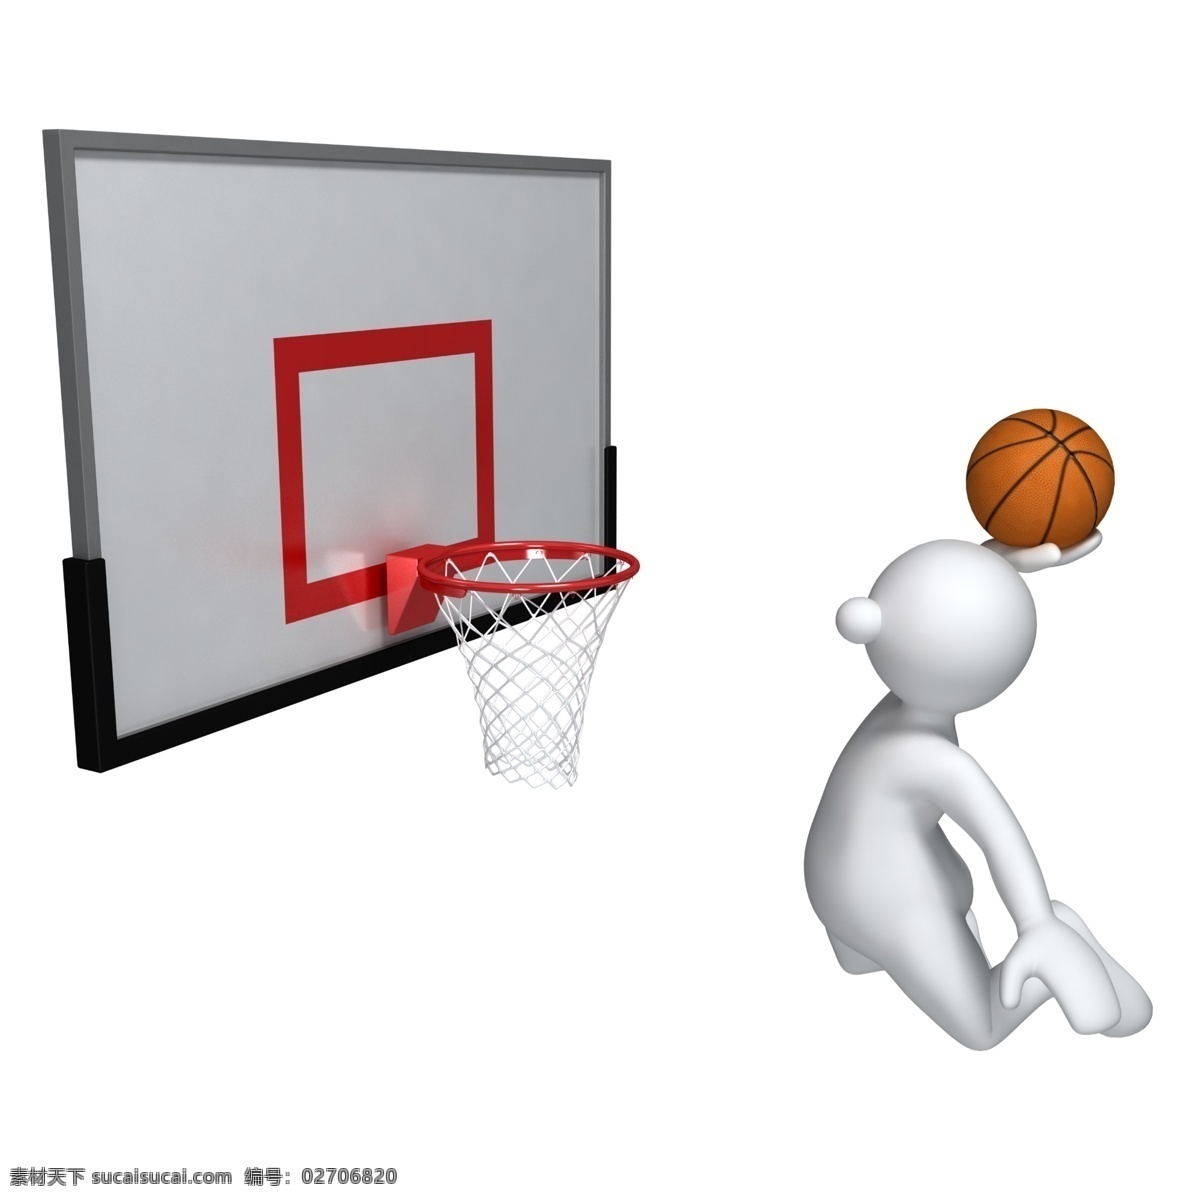 3d人物 3d设计 3d小人 打篮球 篮球 篮球运动 投篮 球 设计素材 模板下载 投篮球 篮球框 锻炼身体 白色小人 psd源文件